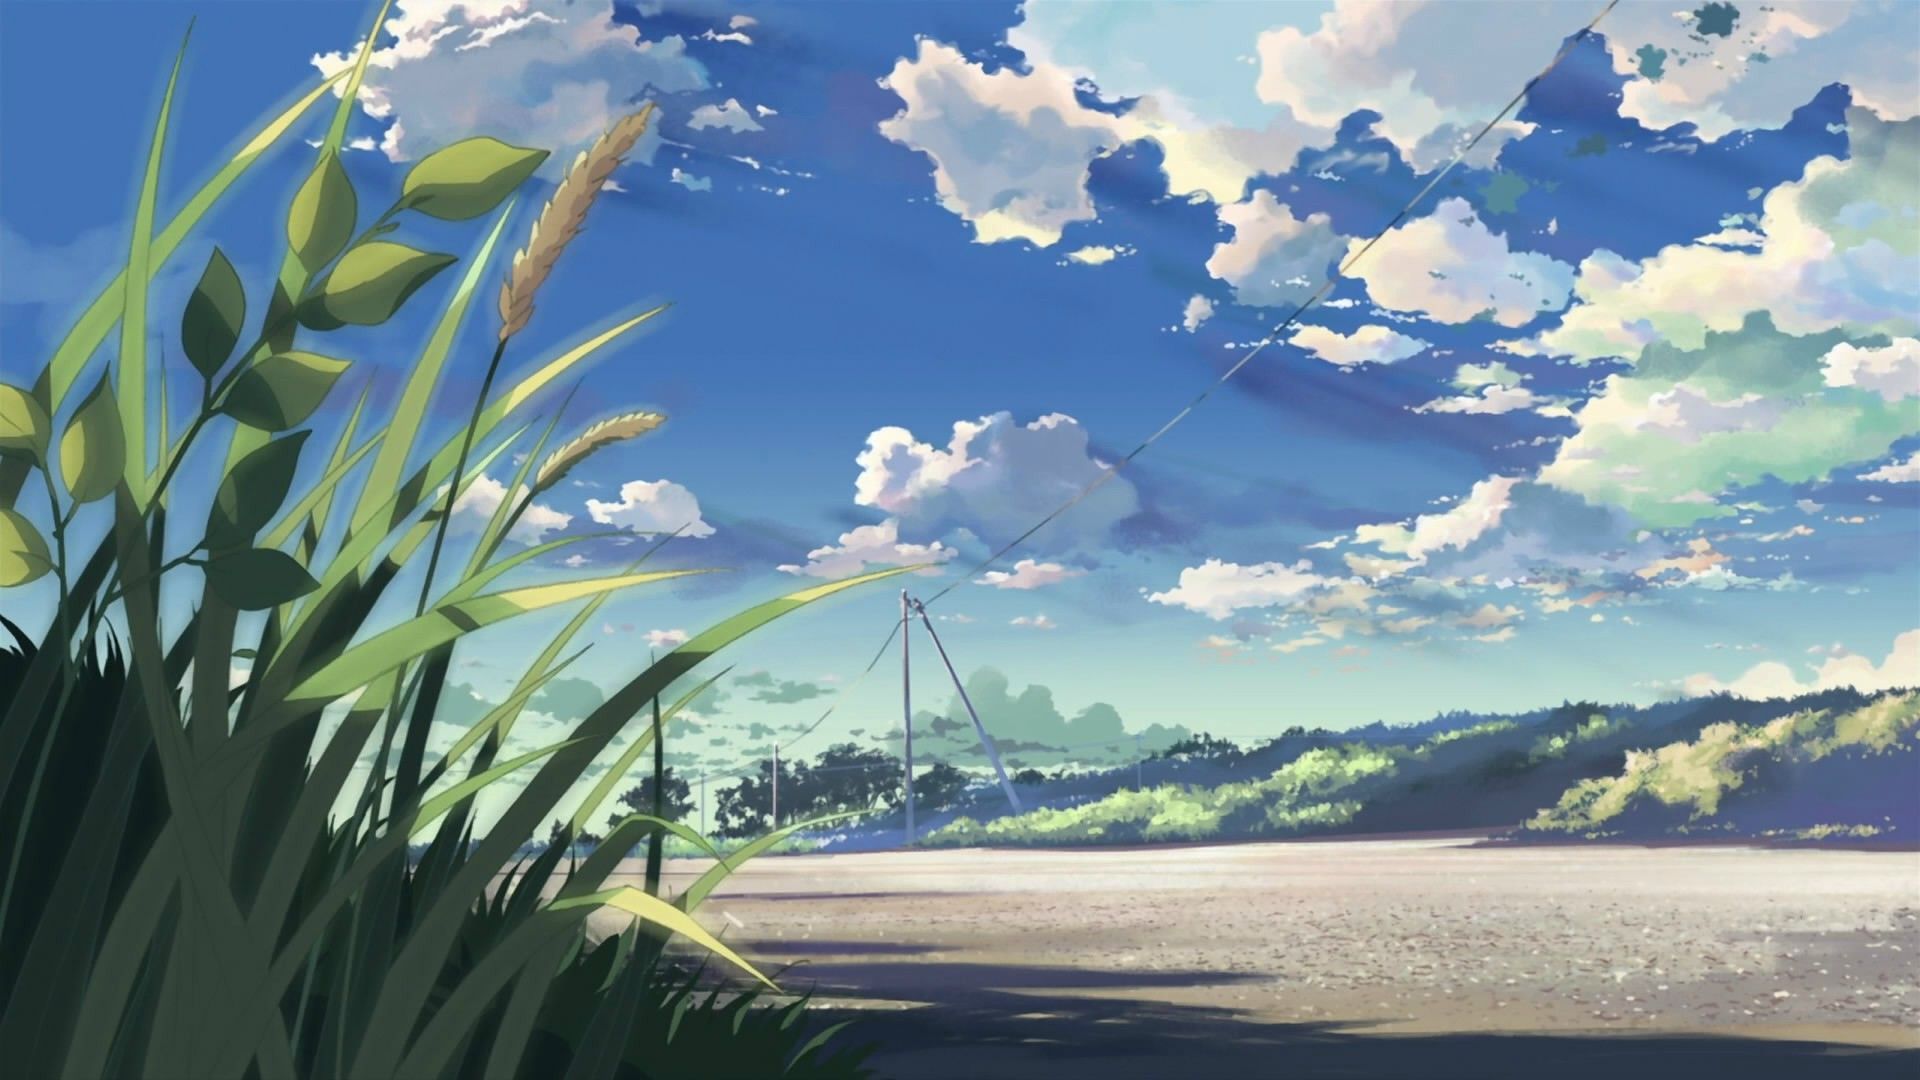 Anime wallpaper. Scenery wallpaper, Anime background wallpaper, Landscape wallpaper